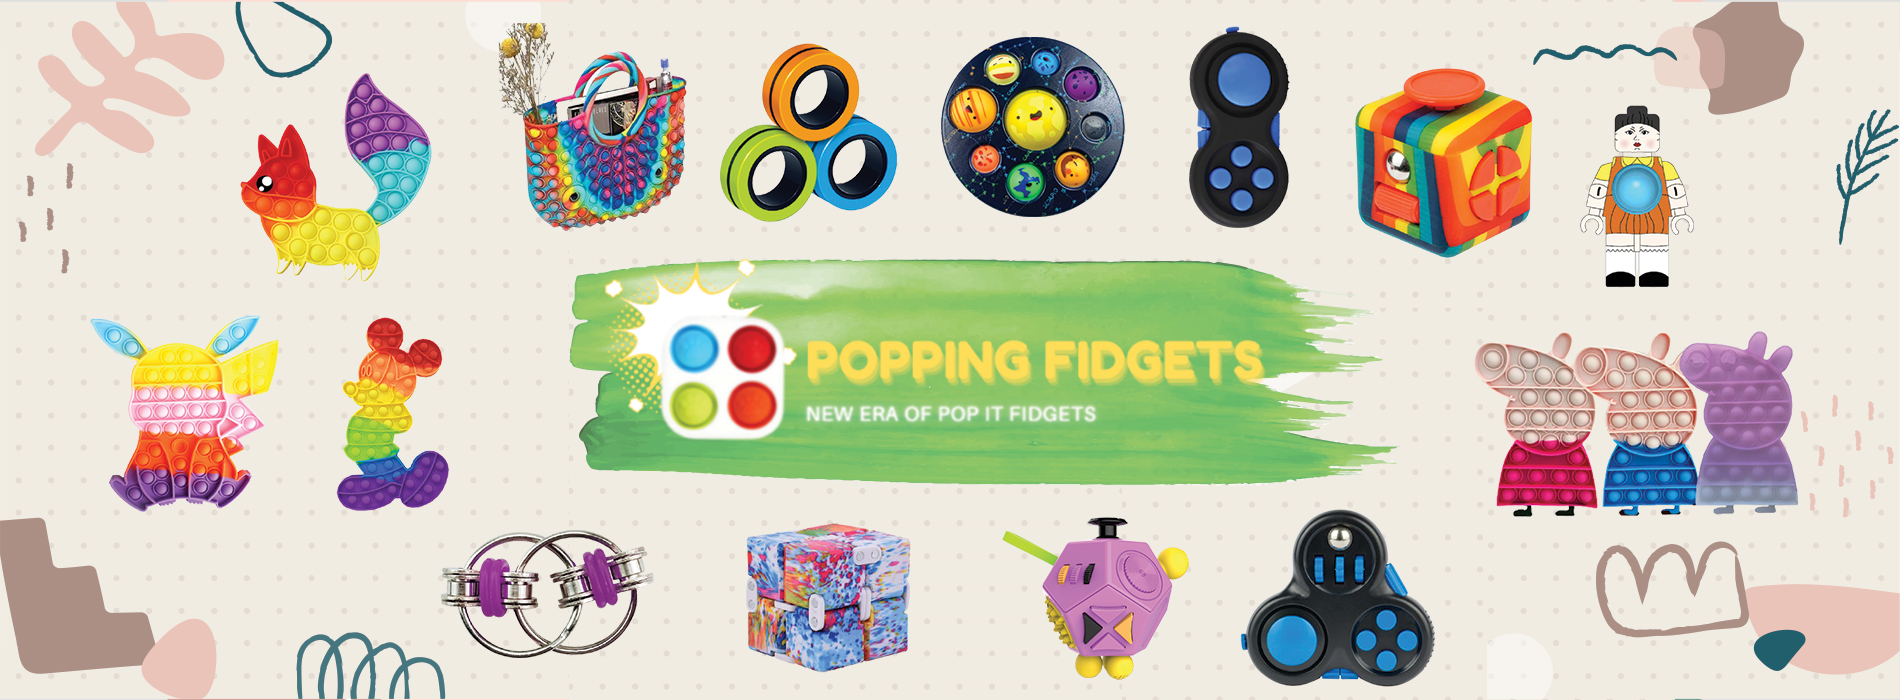 popping-fidget-banner